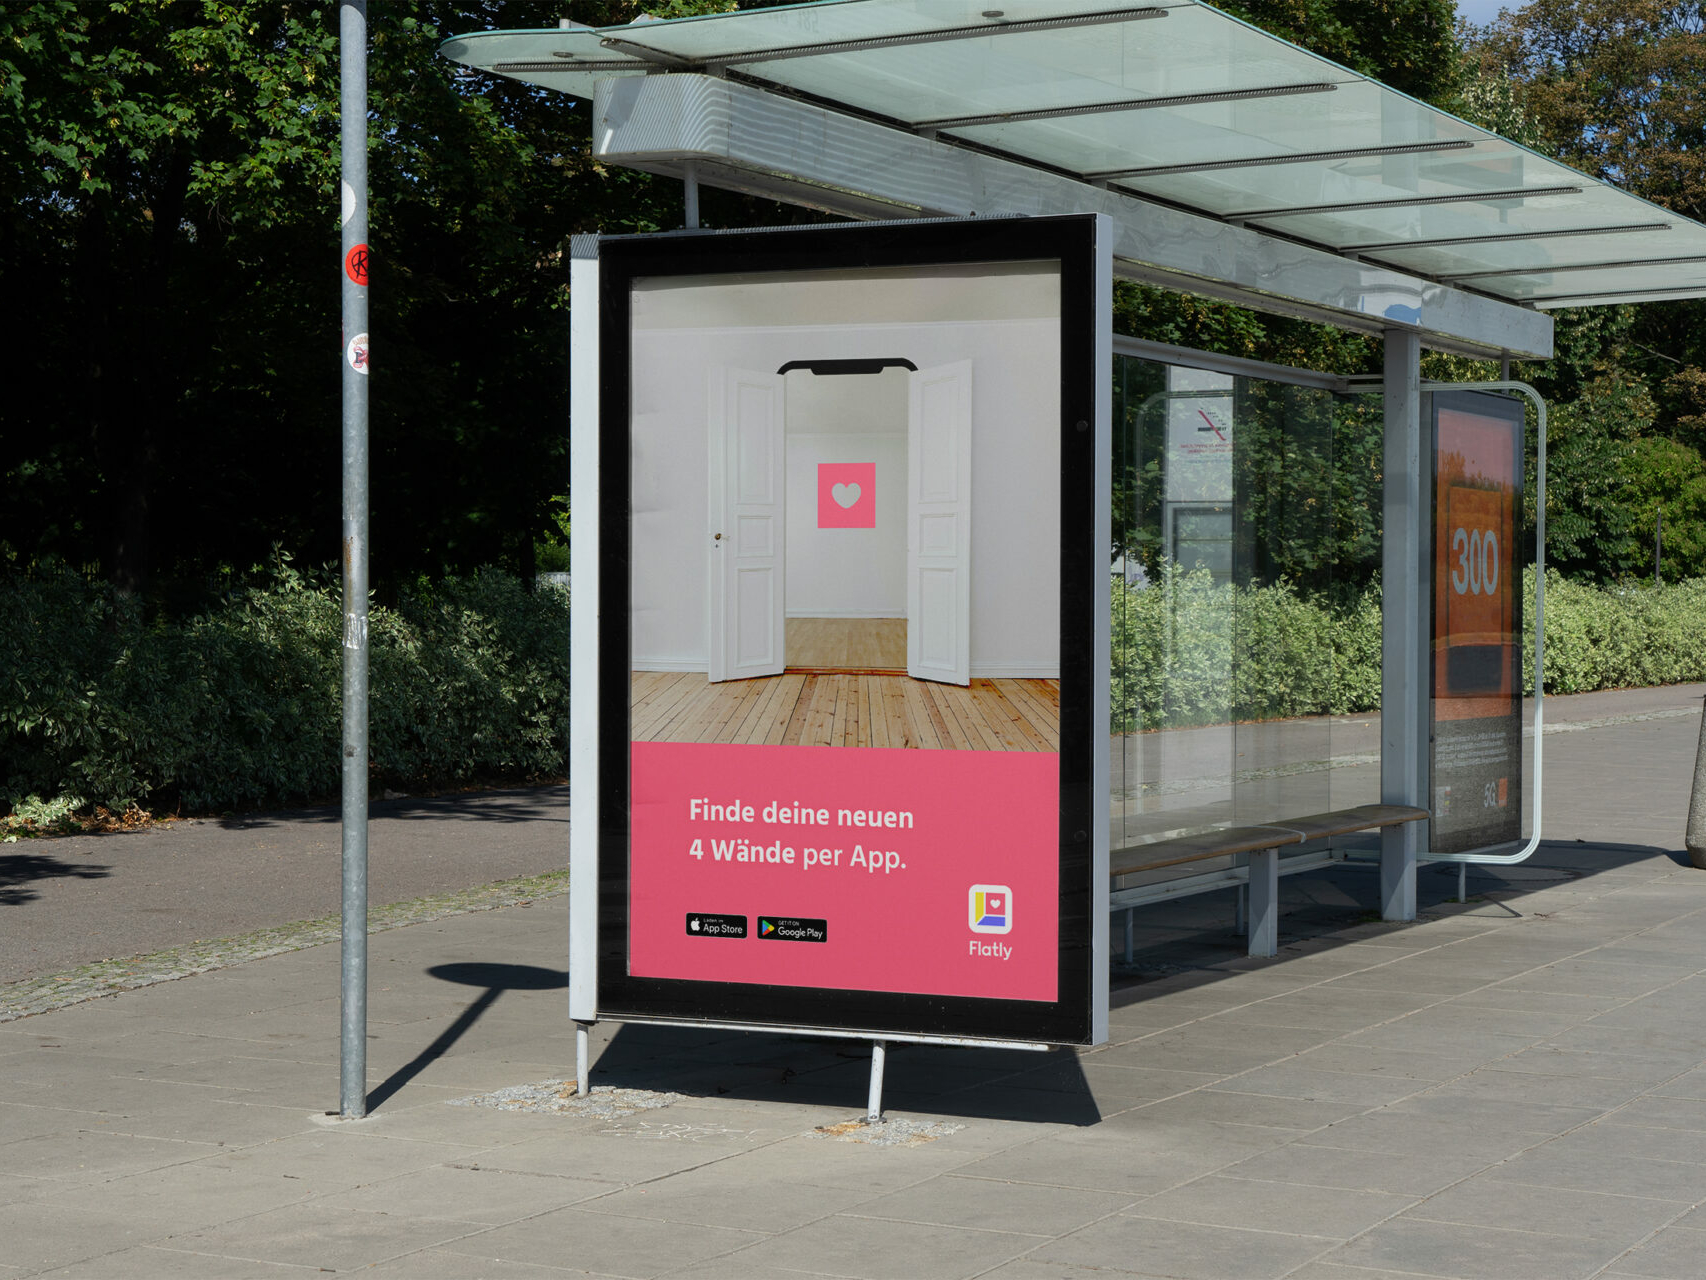 Plakatwerbung mit der Aufforderungen die Flatly-App herunterzuladen. Das Plakat ist an einer Bushaltestelle in Form eines Citylights montiert.